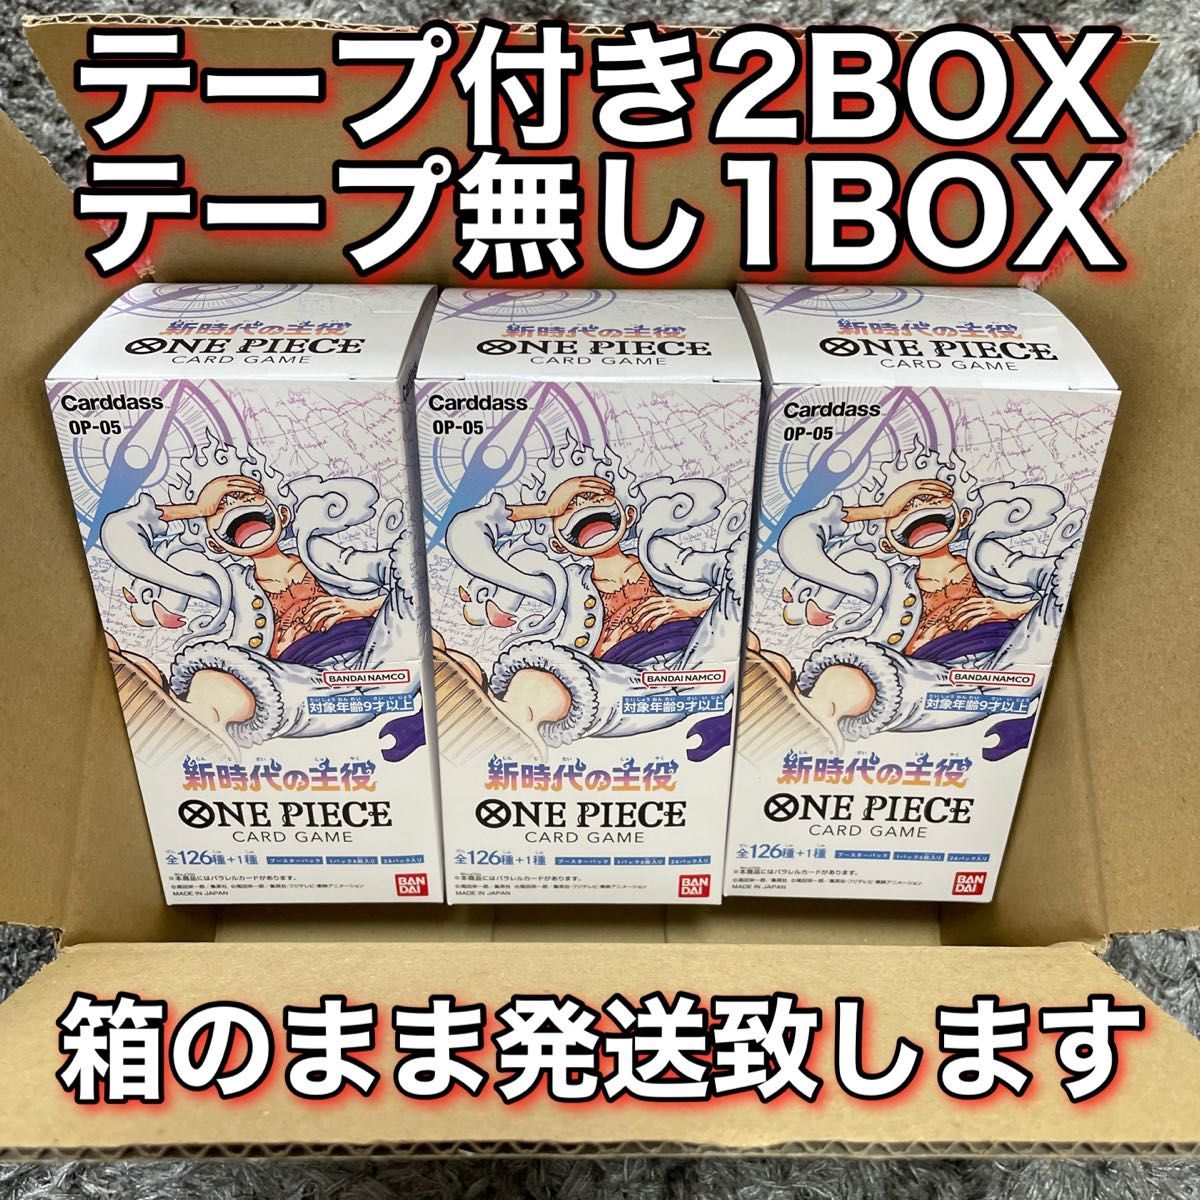 ワンピースカードゲーム 新時代の主役 テープ付き 2ボックス テープ無し 1ボックス